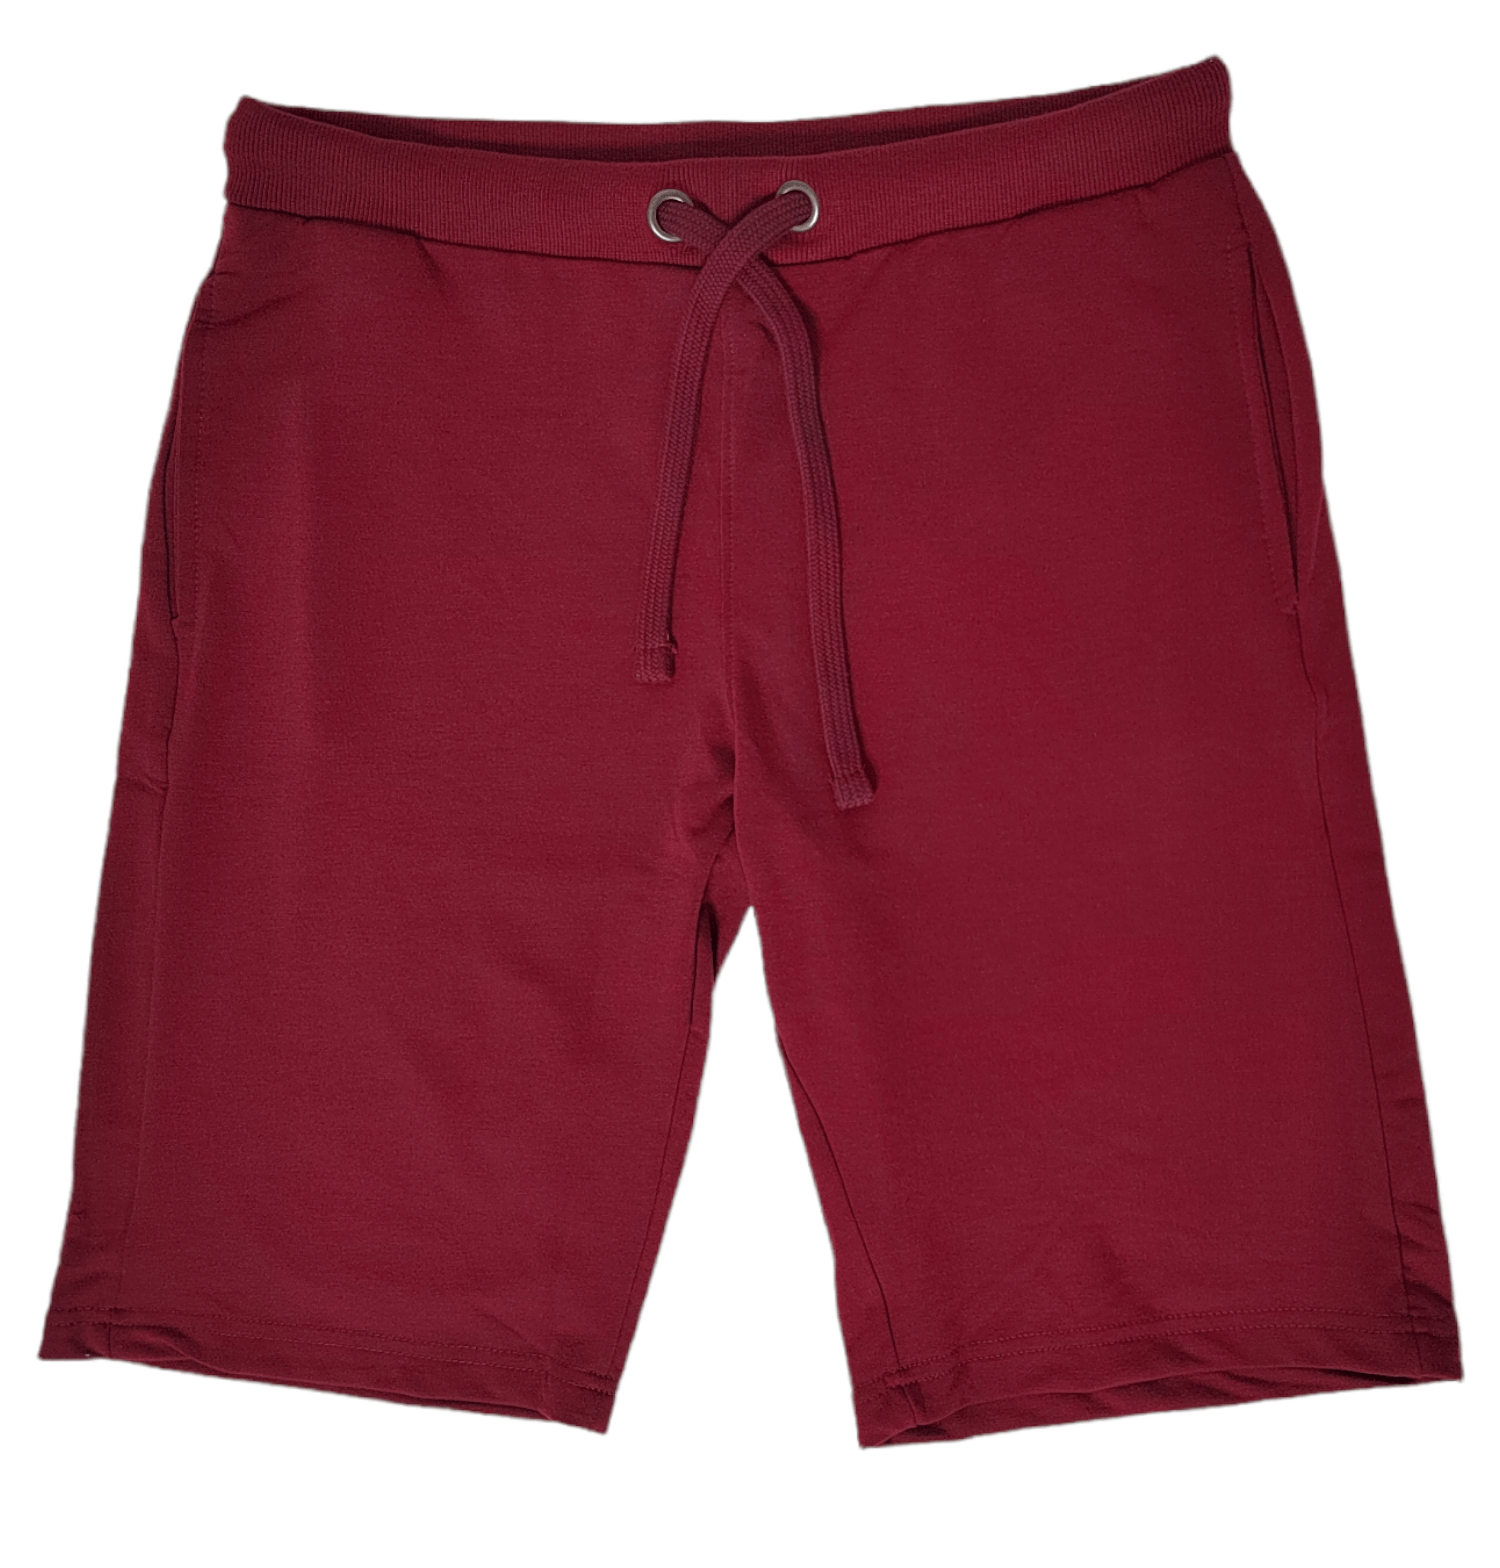 ElOutlet - Men Summer Men Shorts Men - Slim-Fit Shorts - Burgundy